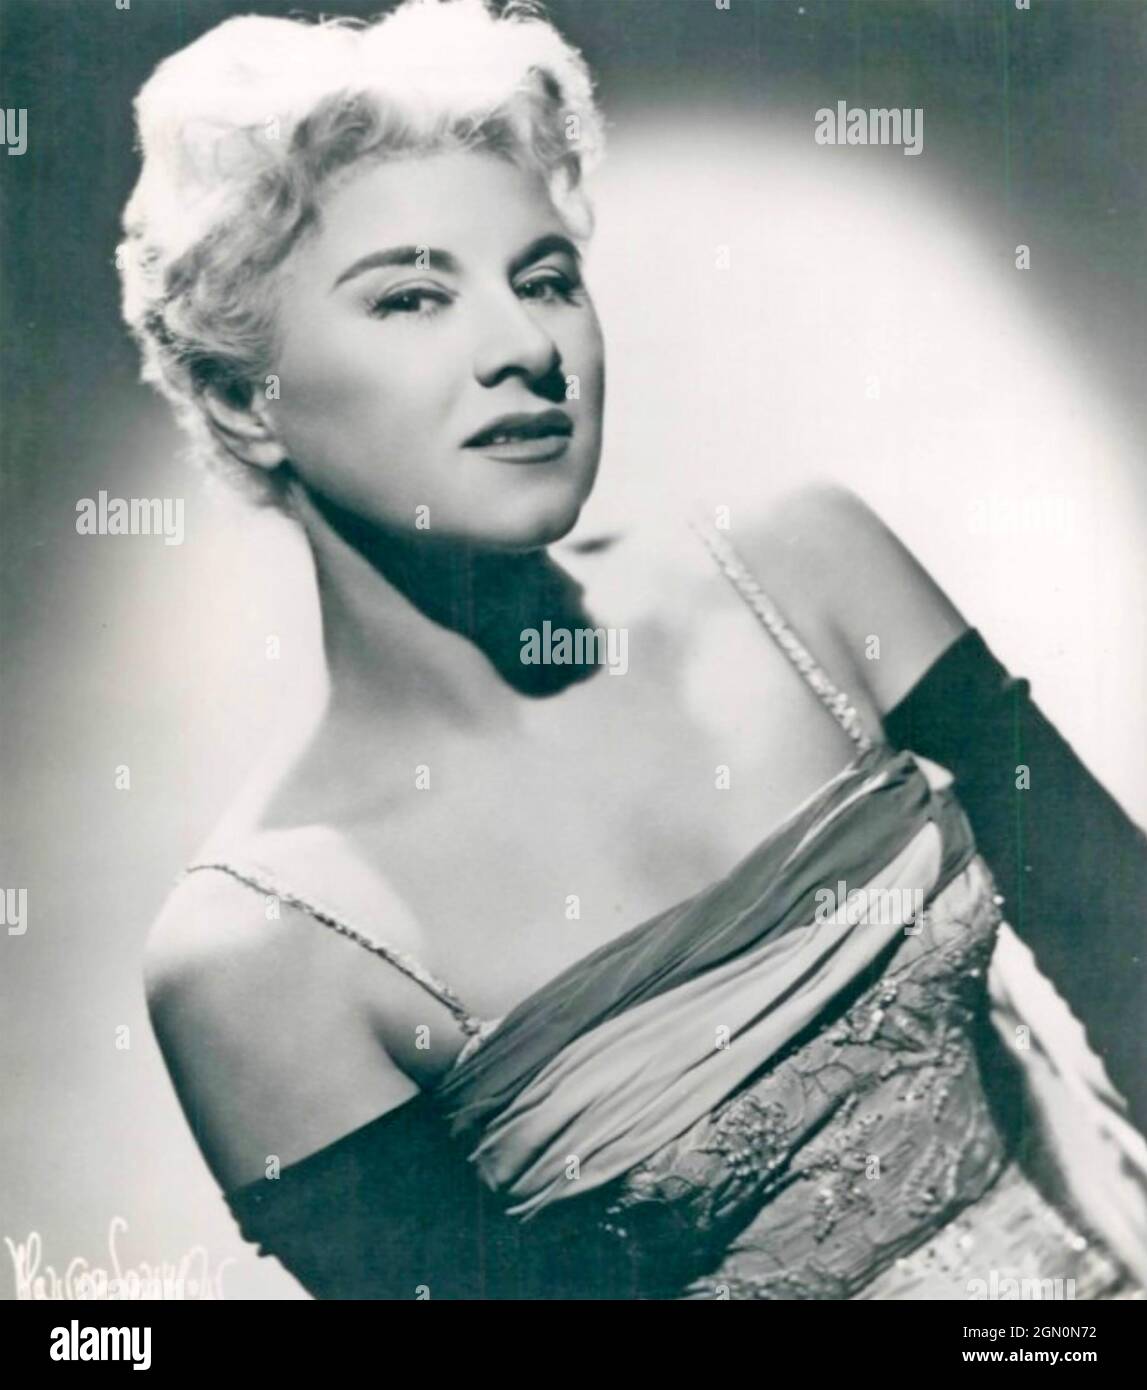 HILDEGARDE SELL (1906-2005) Foto promocional de la cantante estadounidense en 1960 Foto de stock